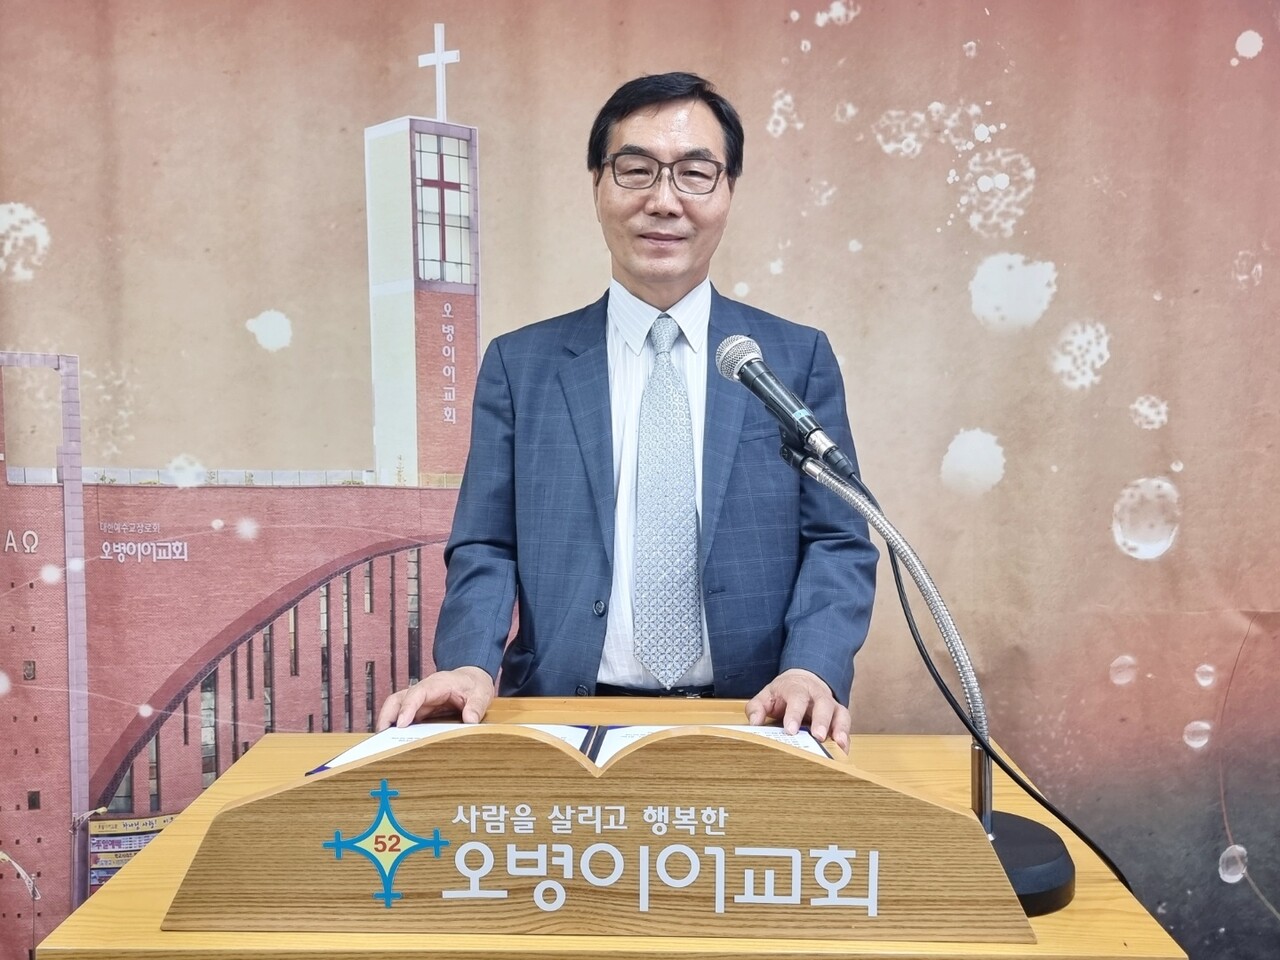 설교하는 광명오병이어교회 담임 권영구 목사.